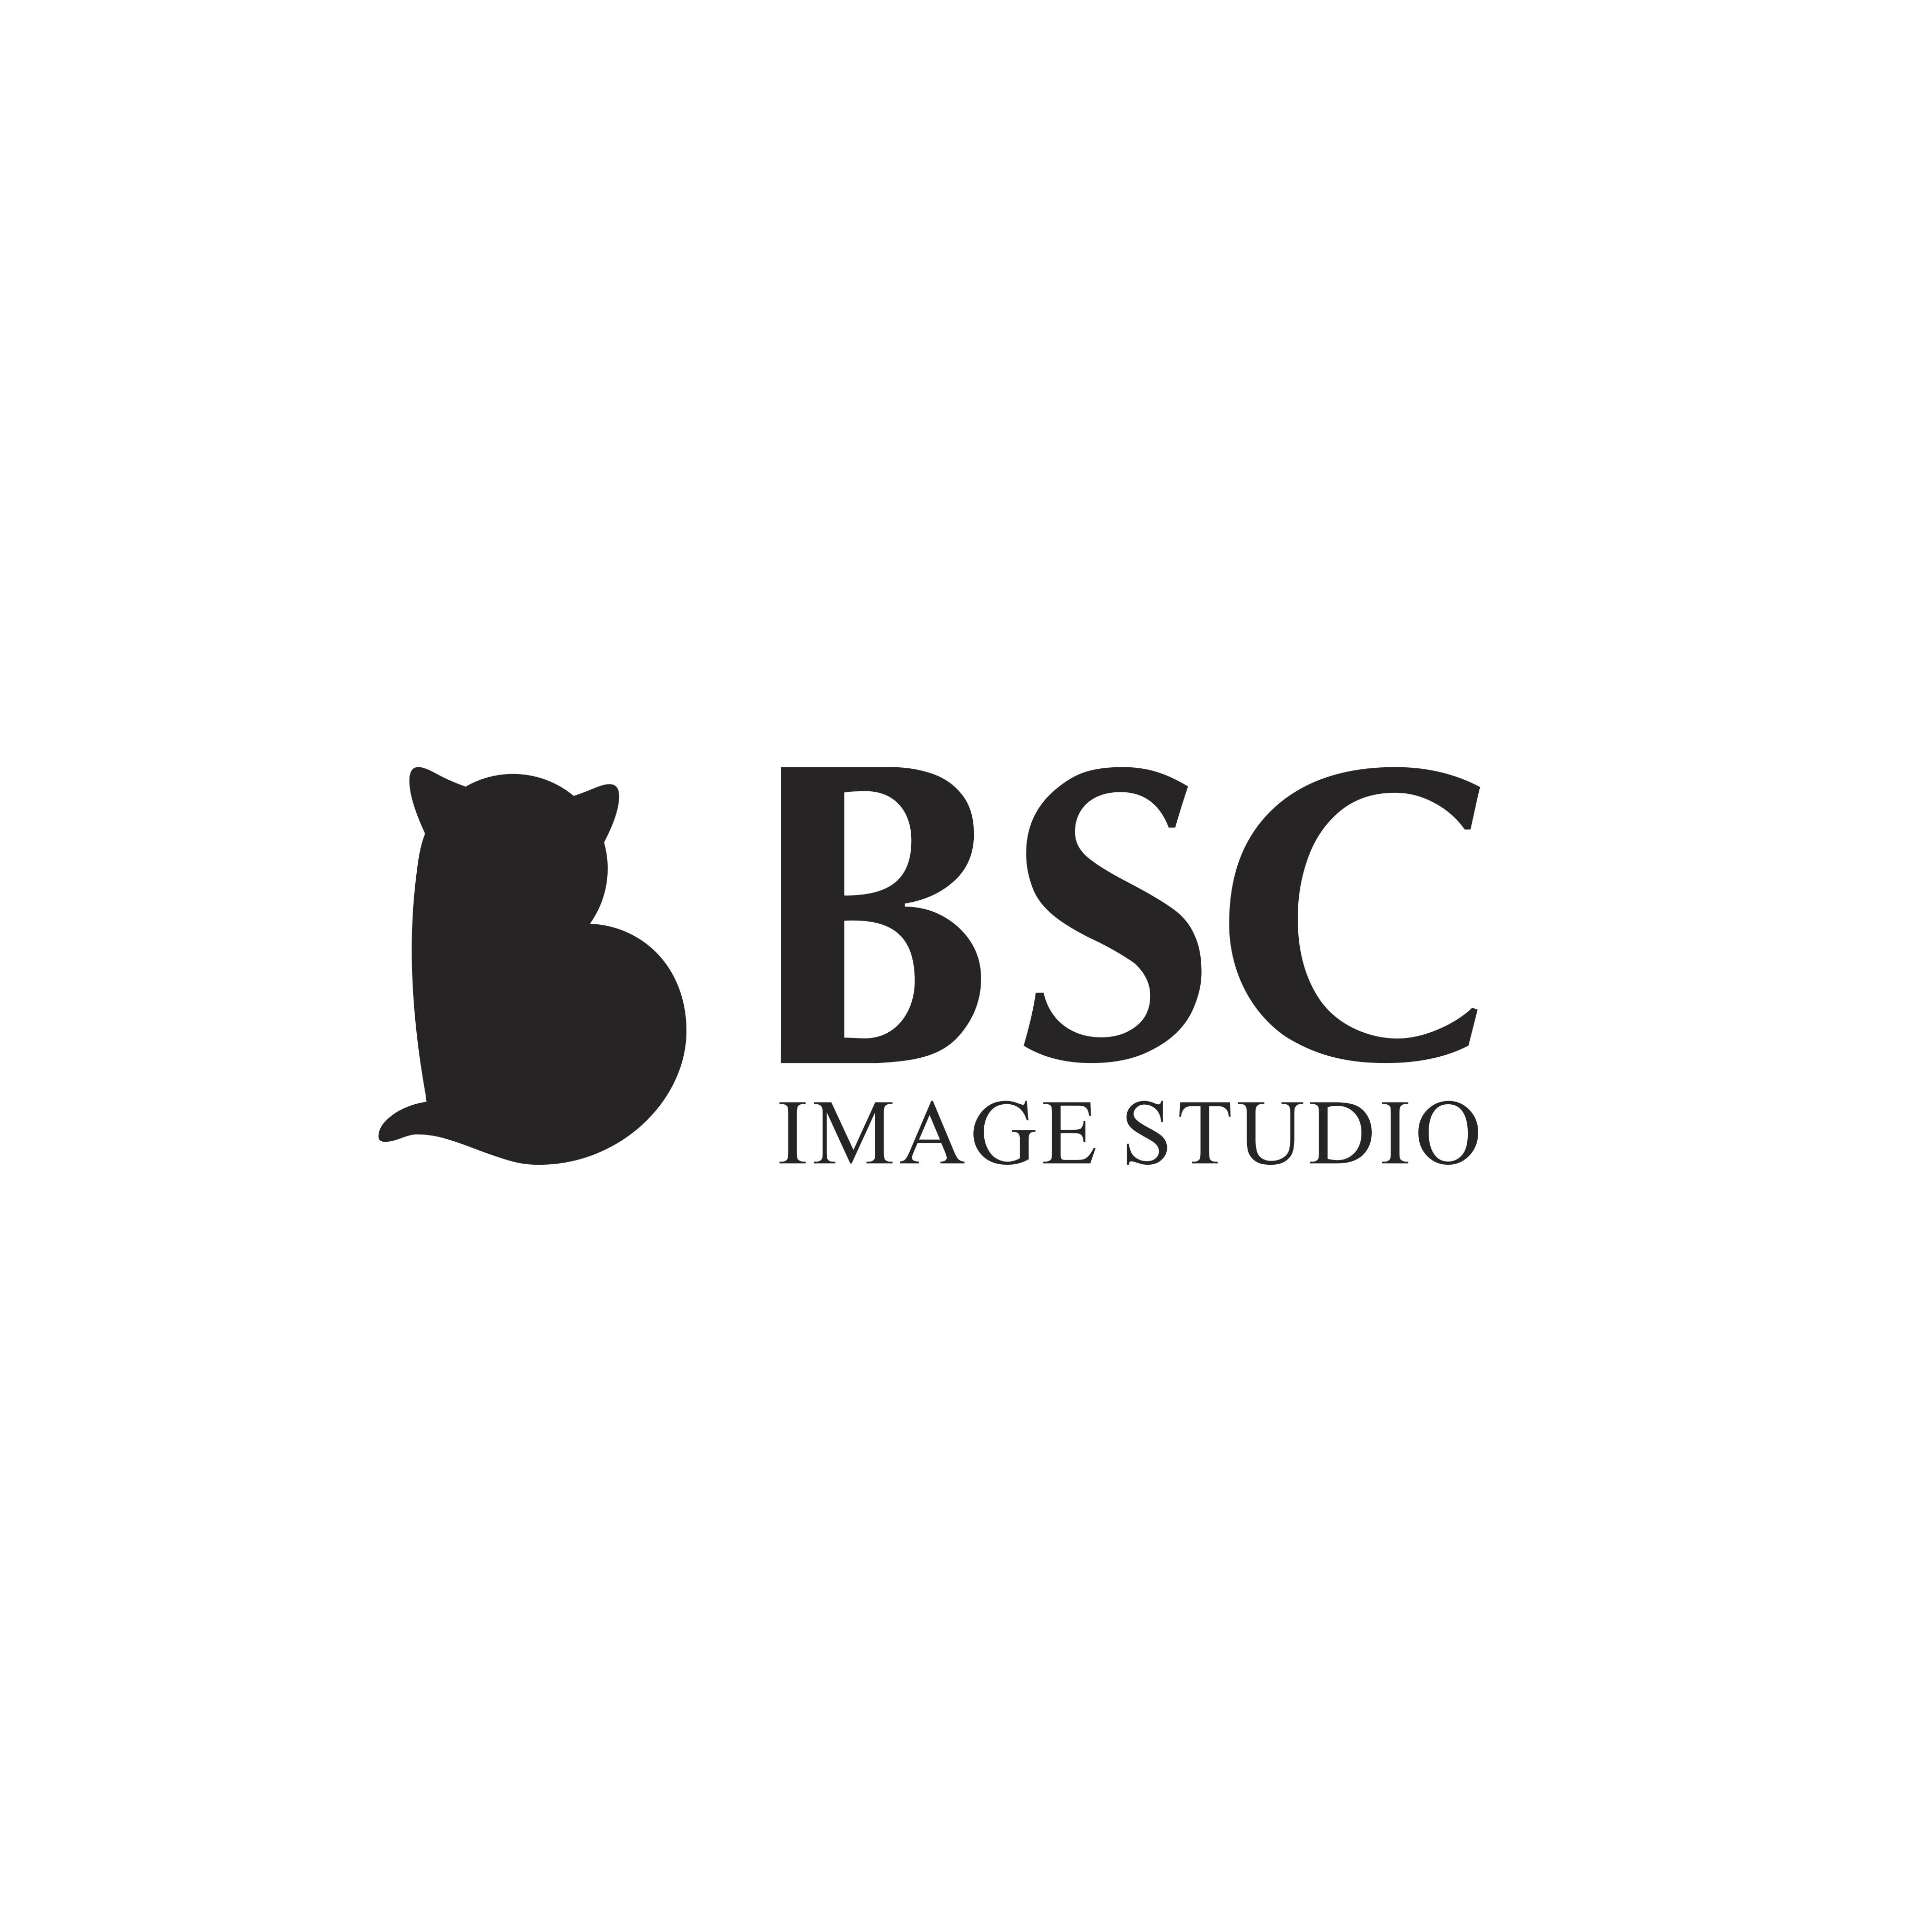 BSC IMAGE STUDIO